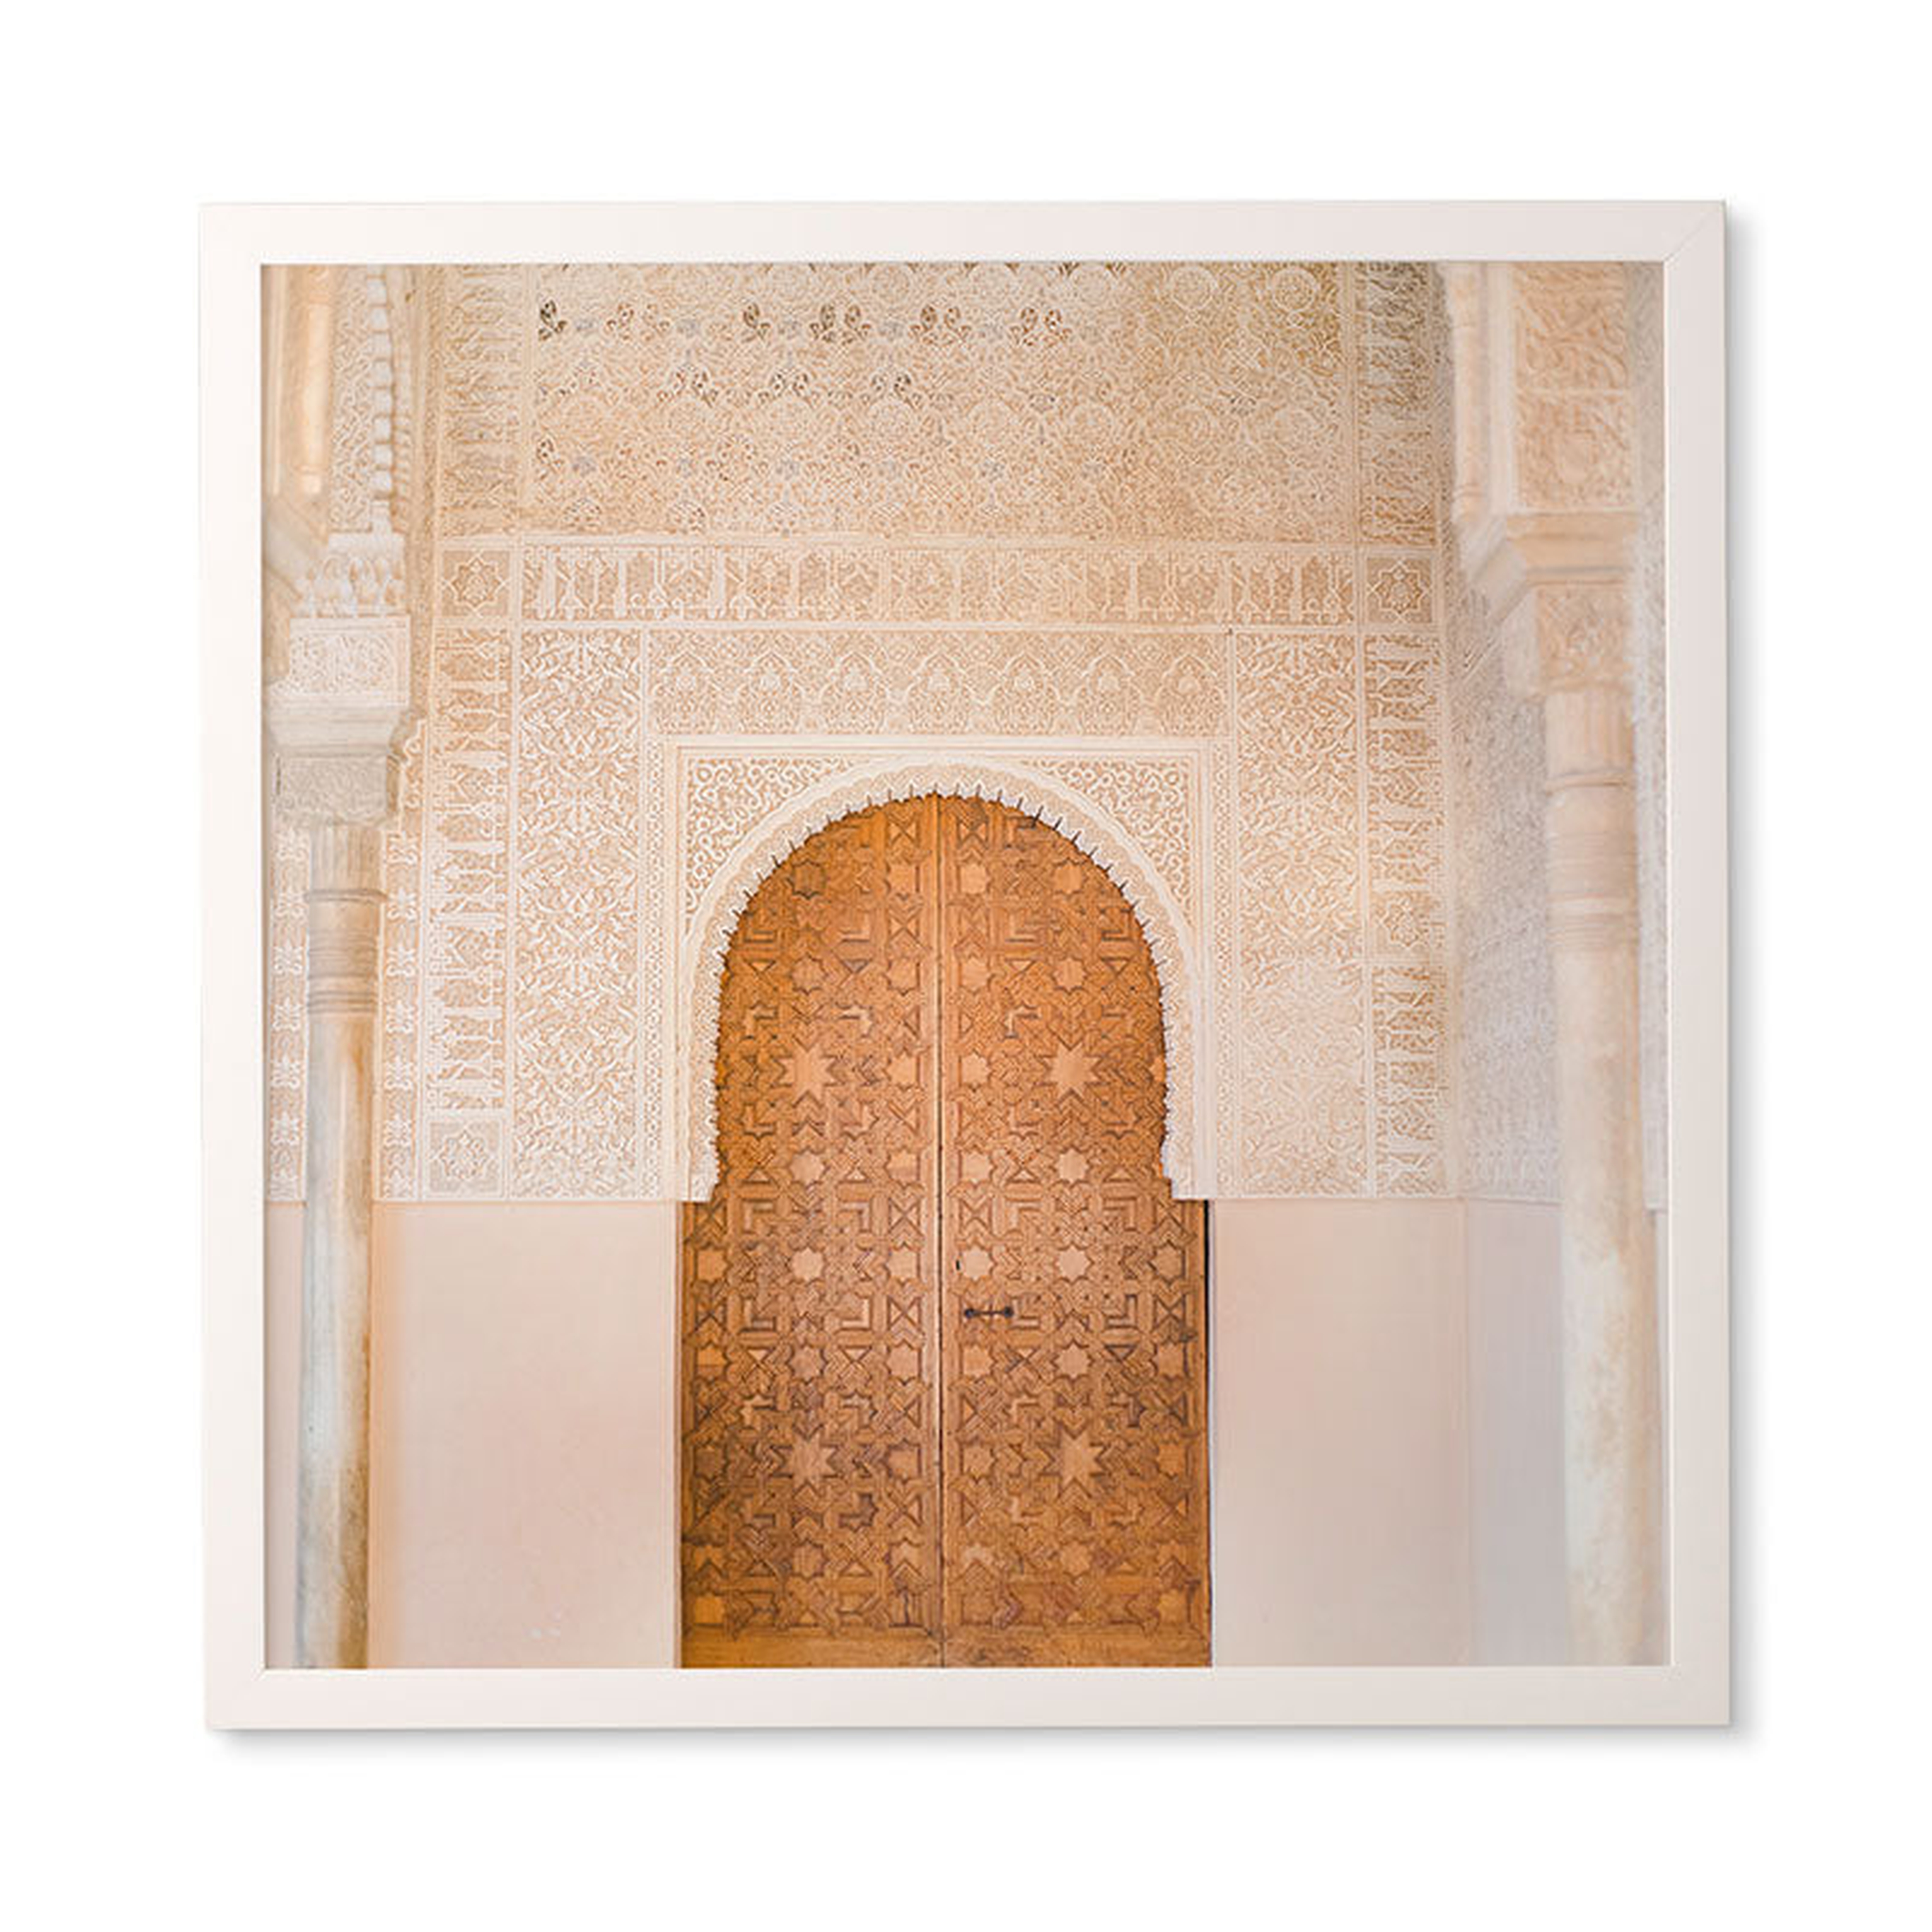 ALHAMBRA DOOR GRANADA SPAIN  BY RAISAZWART 30 x 30 - Wander Print Co.